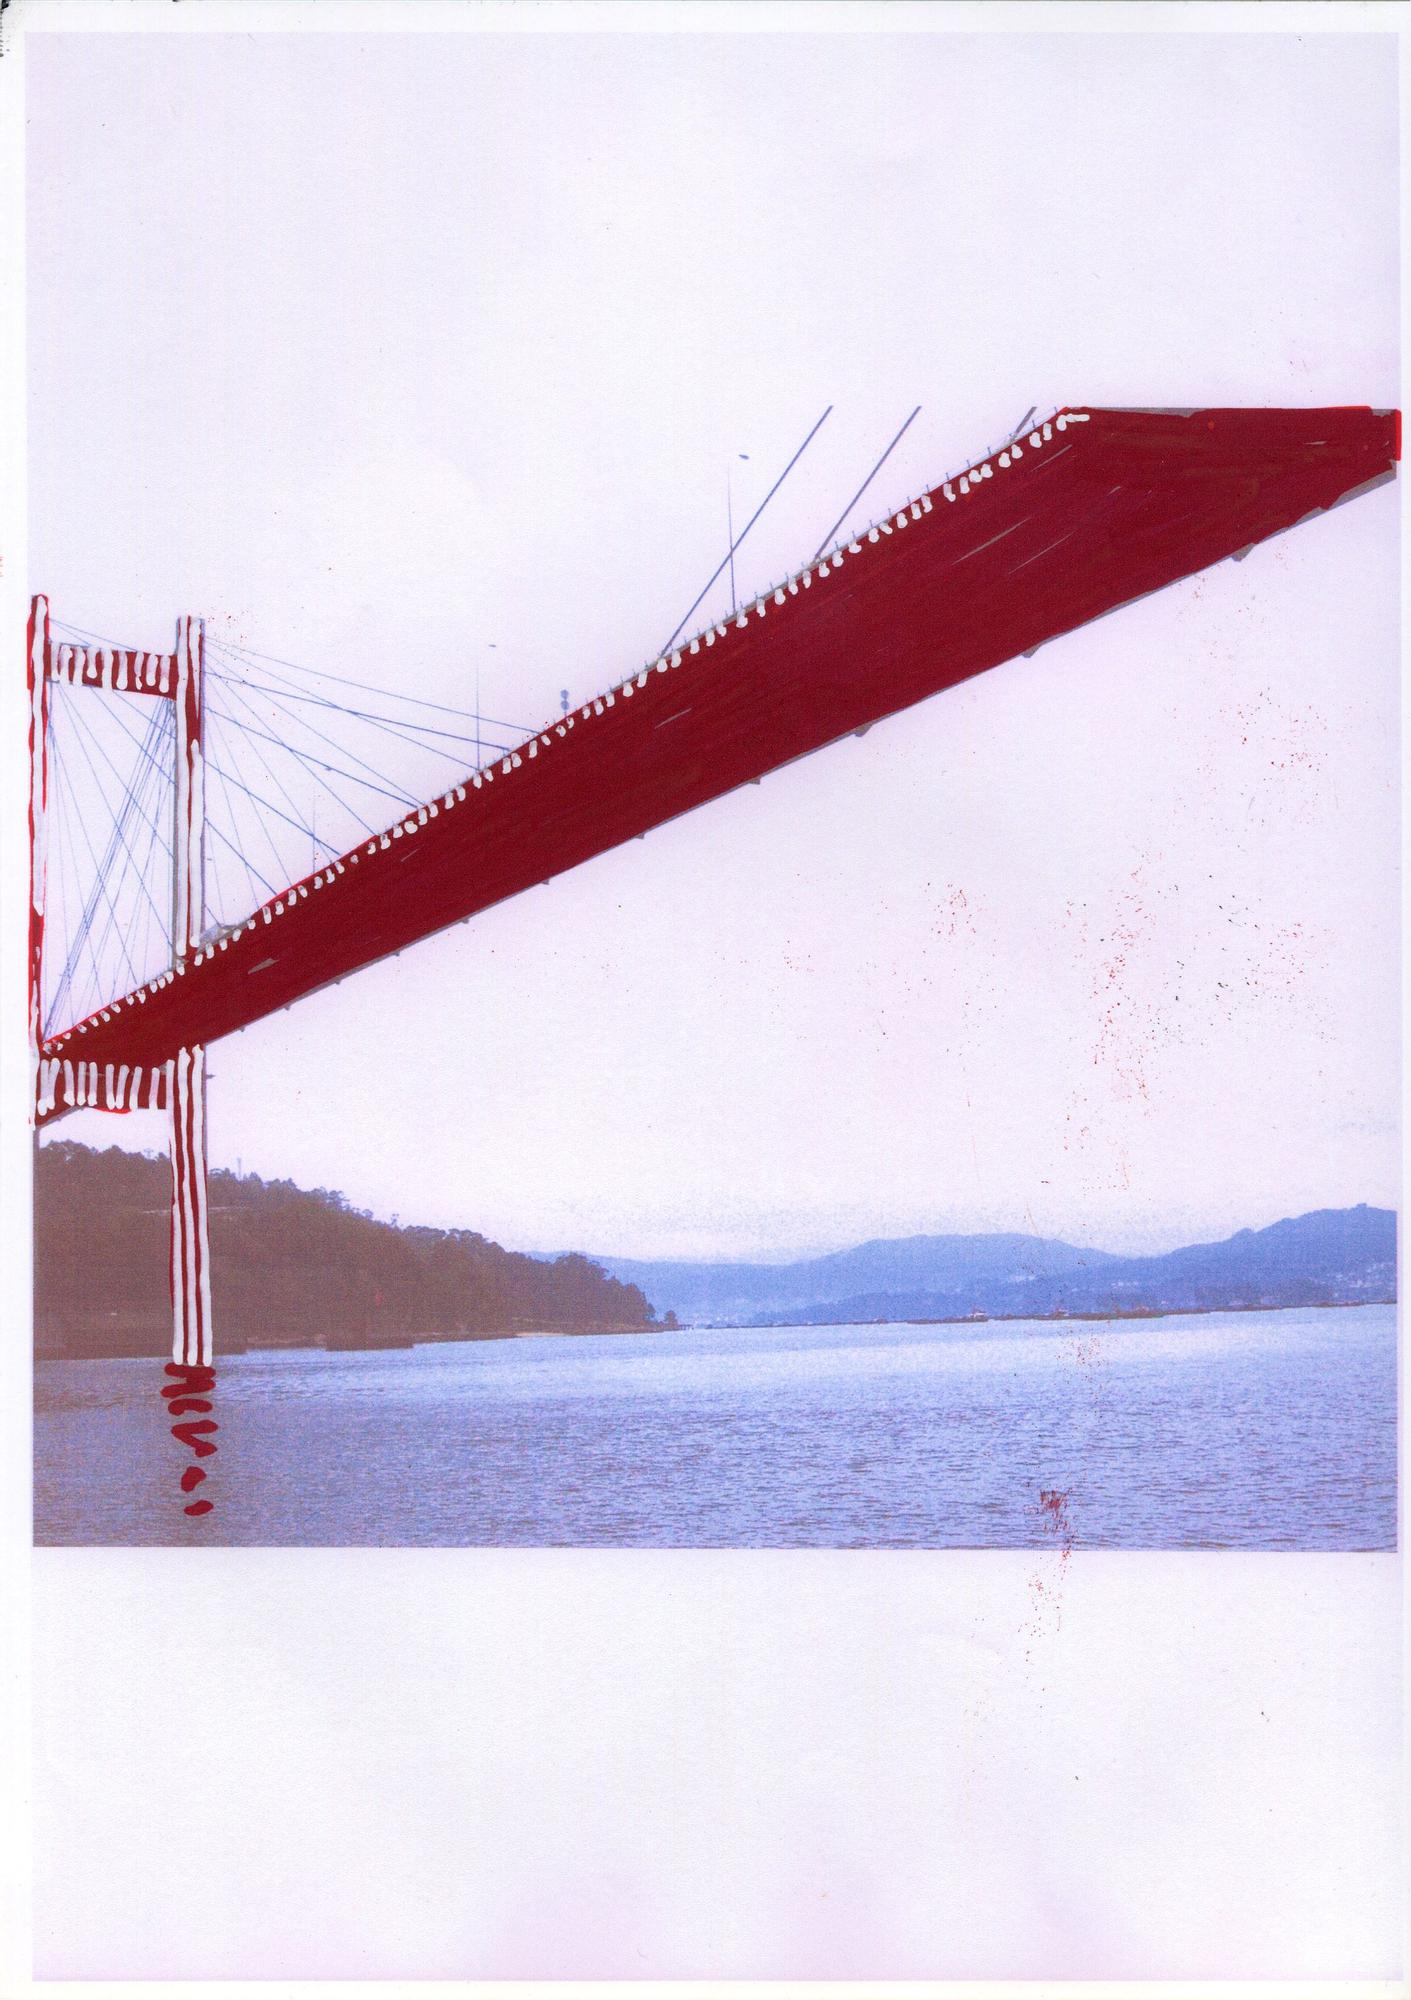 Daniel Buren, el artista que quiso pintar de rojo el puente de Rande